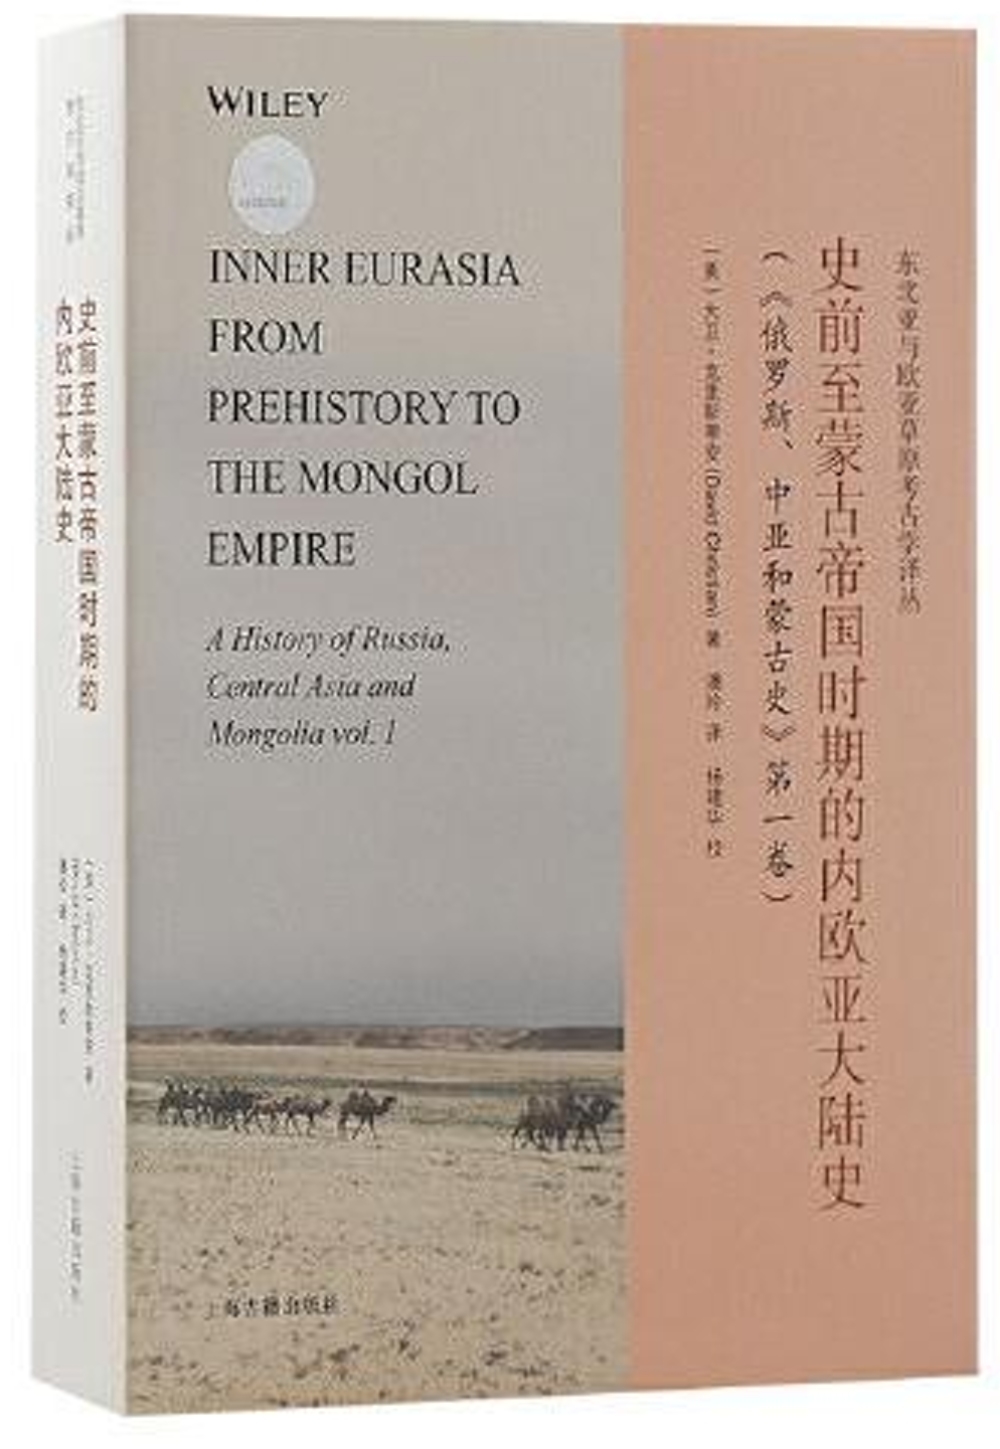 史前至蒙古帝國時期的內歐亞大陸史